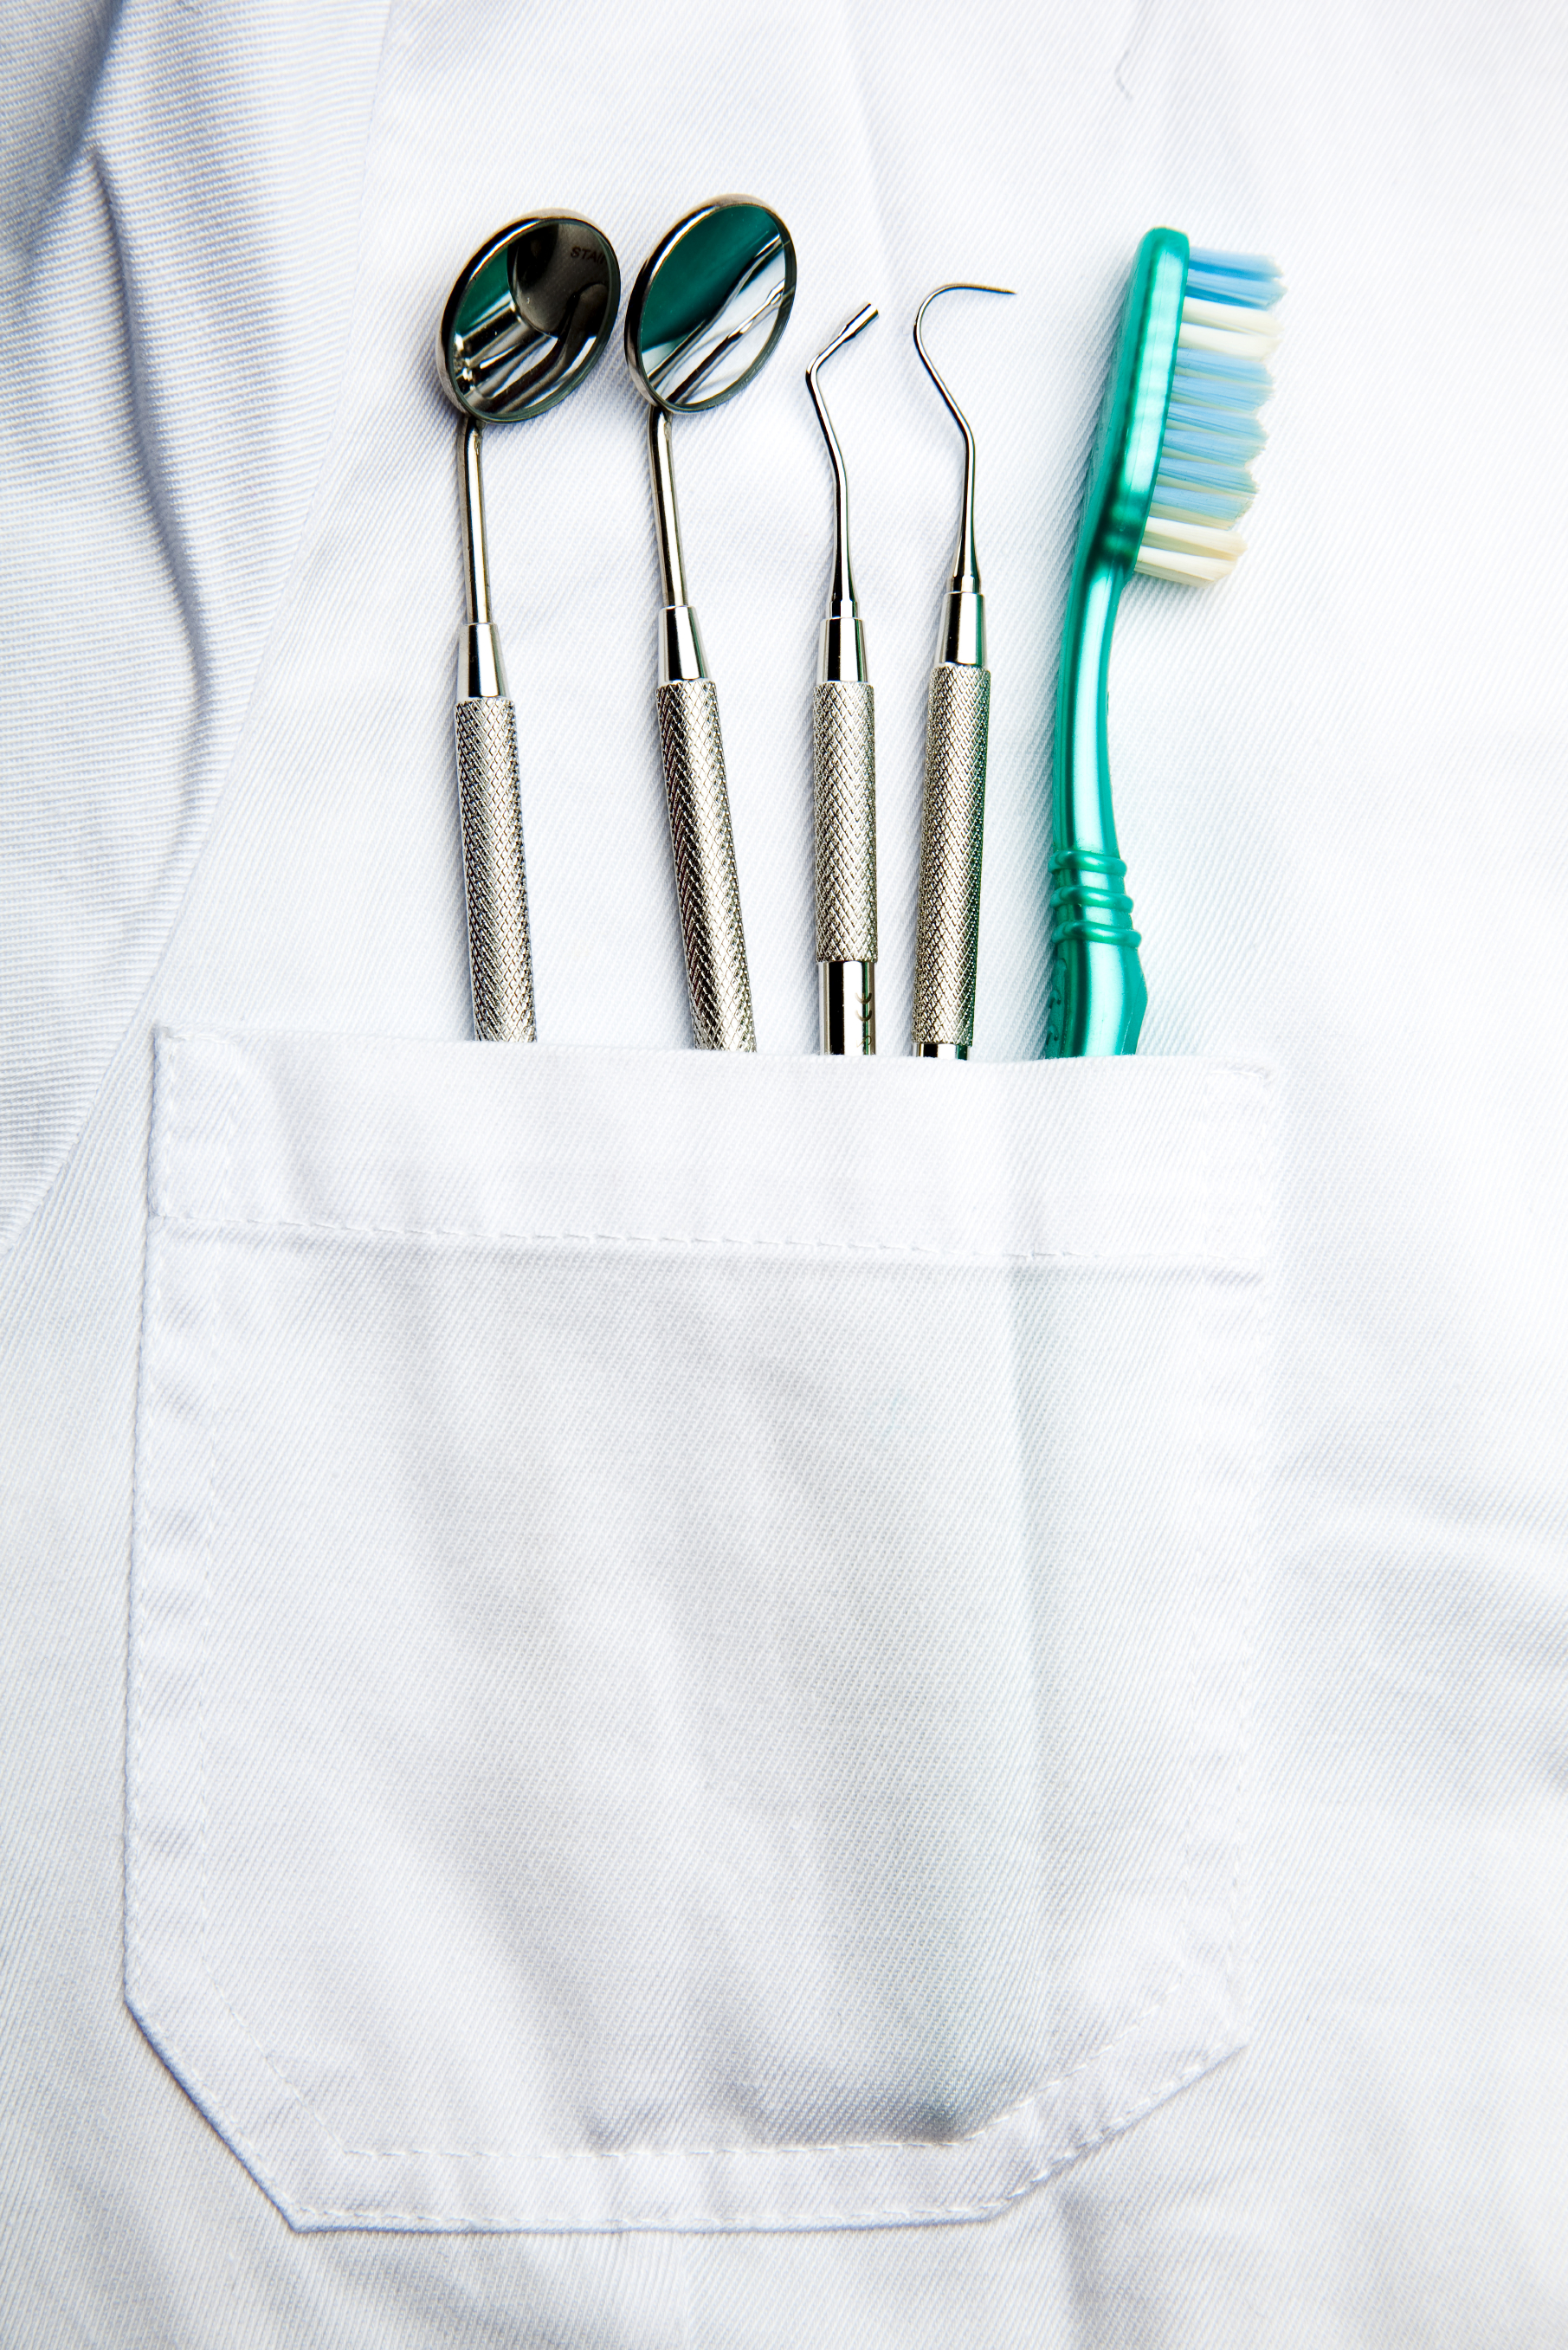 Dental-Tools-Instruments.jpg